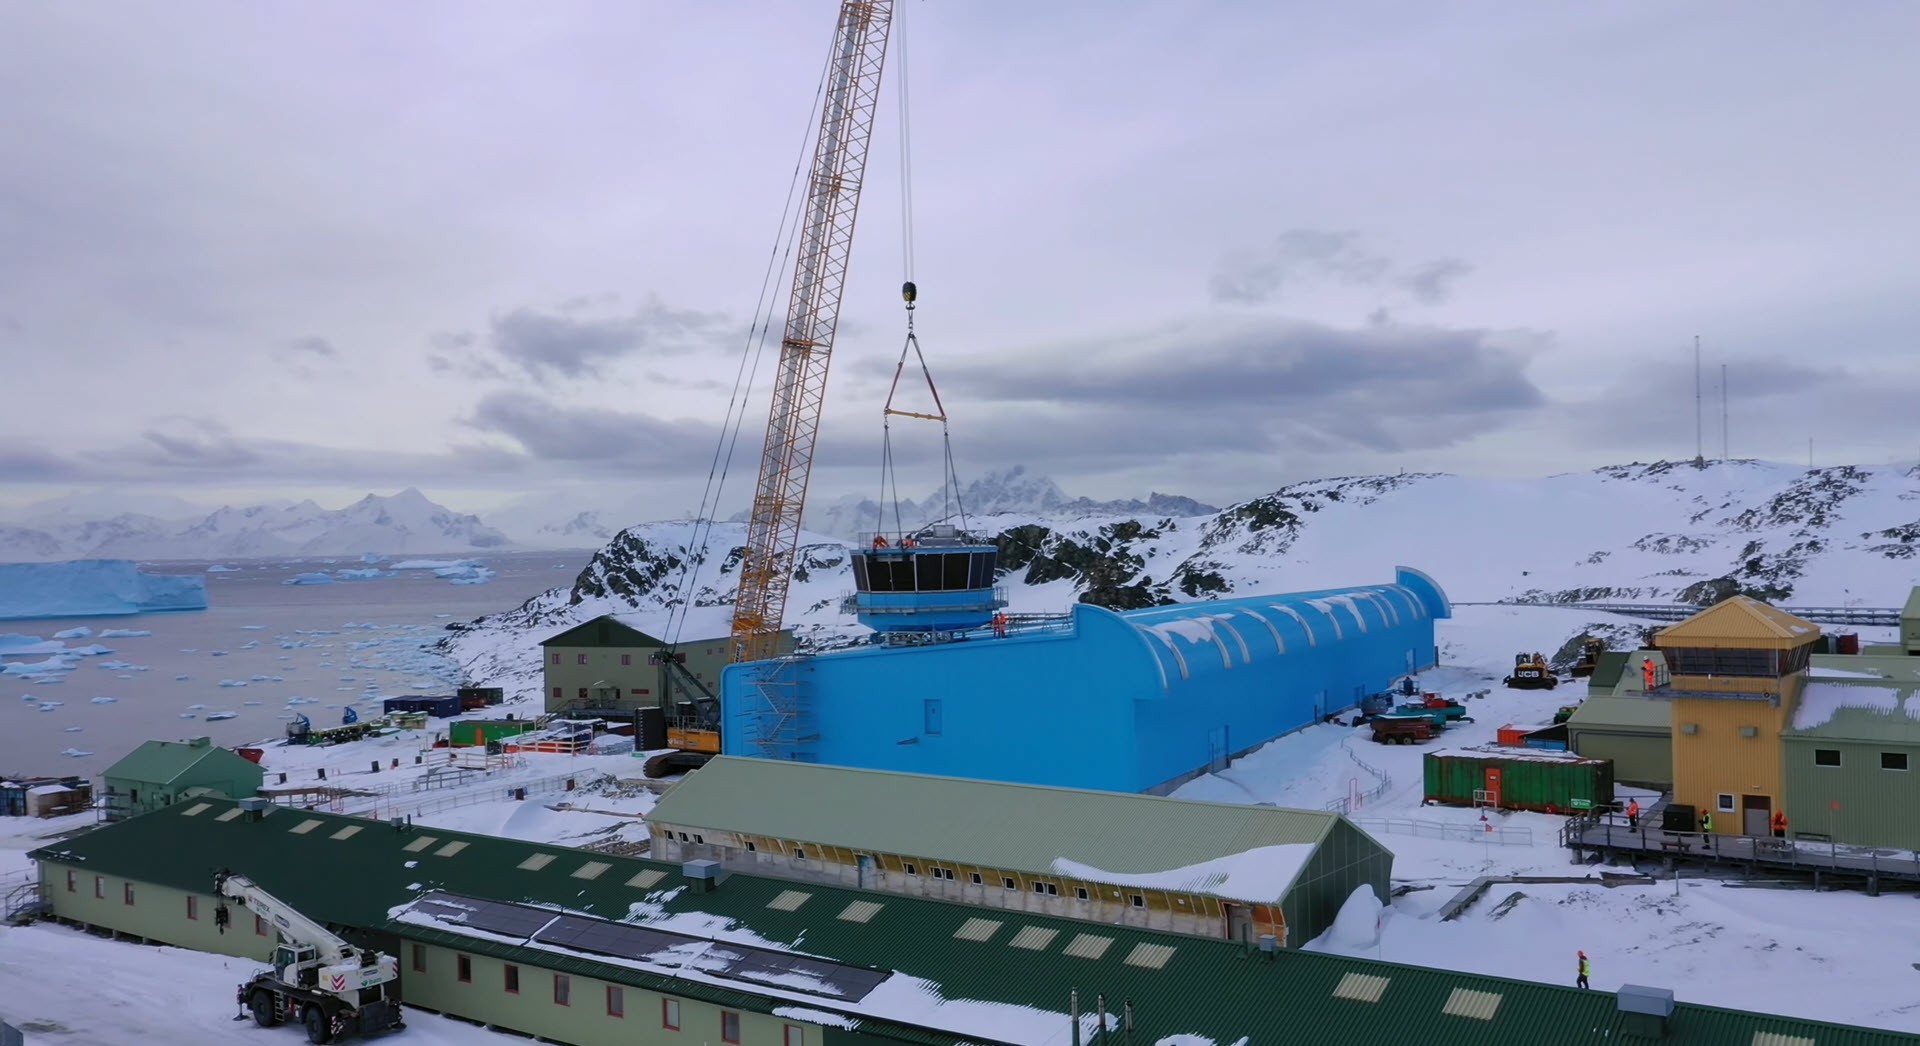 Neues Gebäude Rothera Antarktis Dach